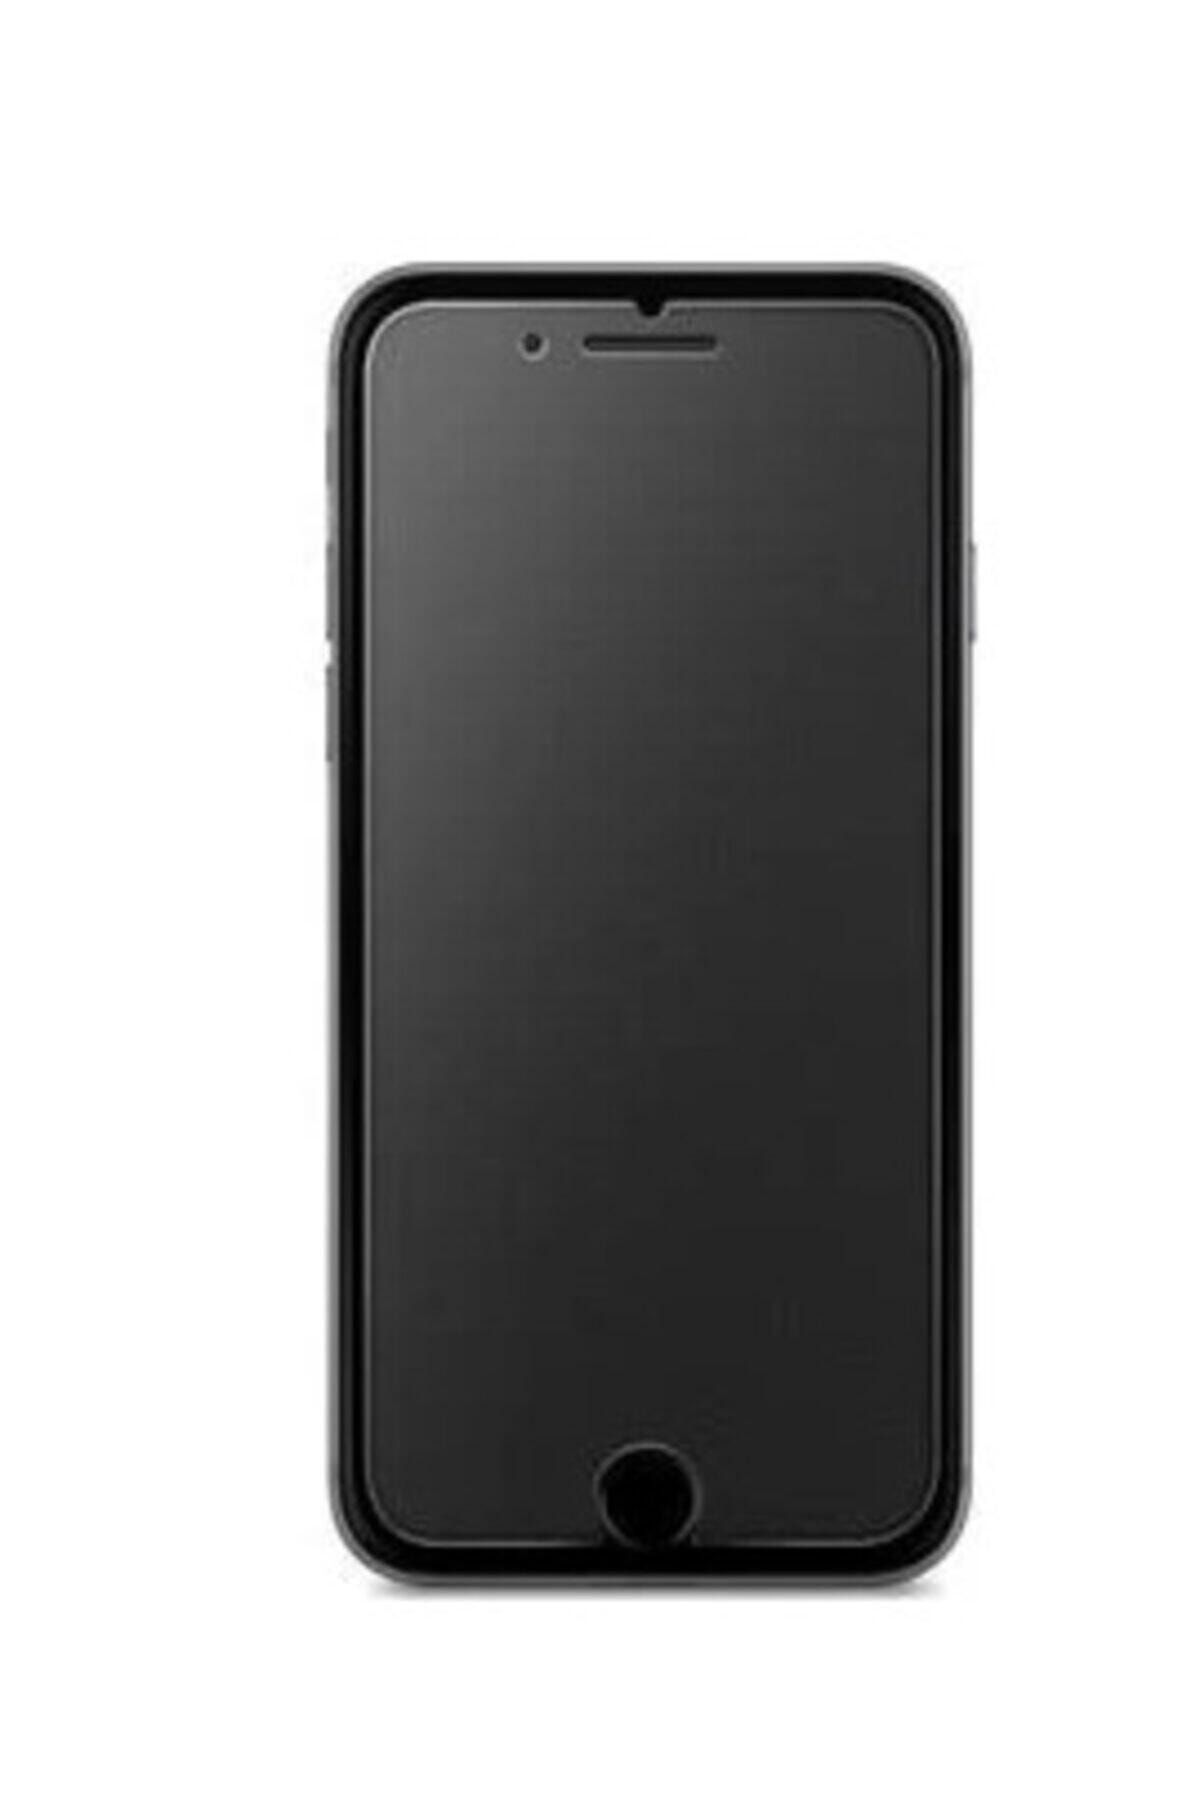 Pars Iphone 6 -6s Tam Kaplayan Parmak Izi Bırakmayan Mat Ekran Koruyucu Nano Jelatin -siyah Çerçeve